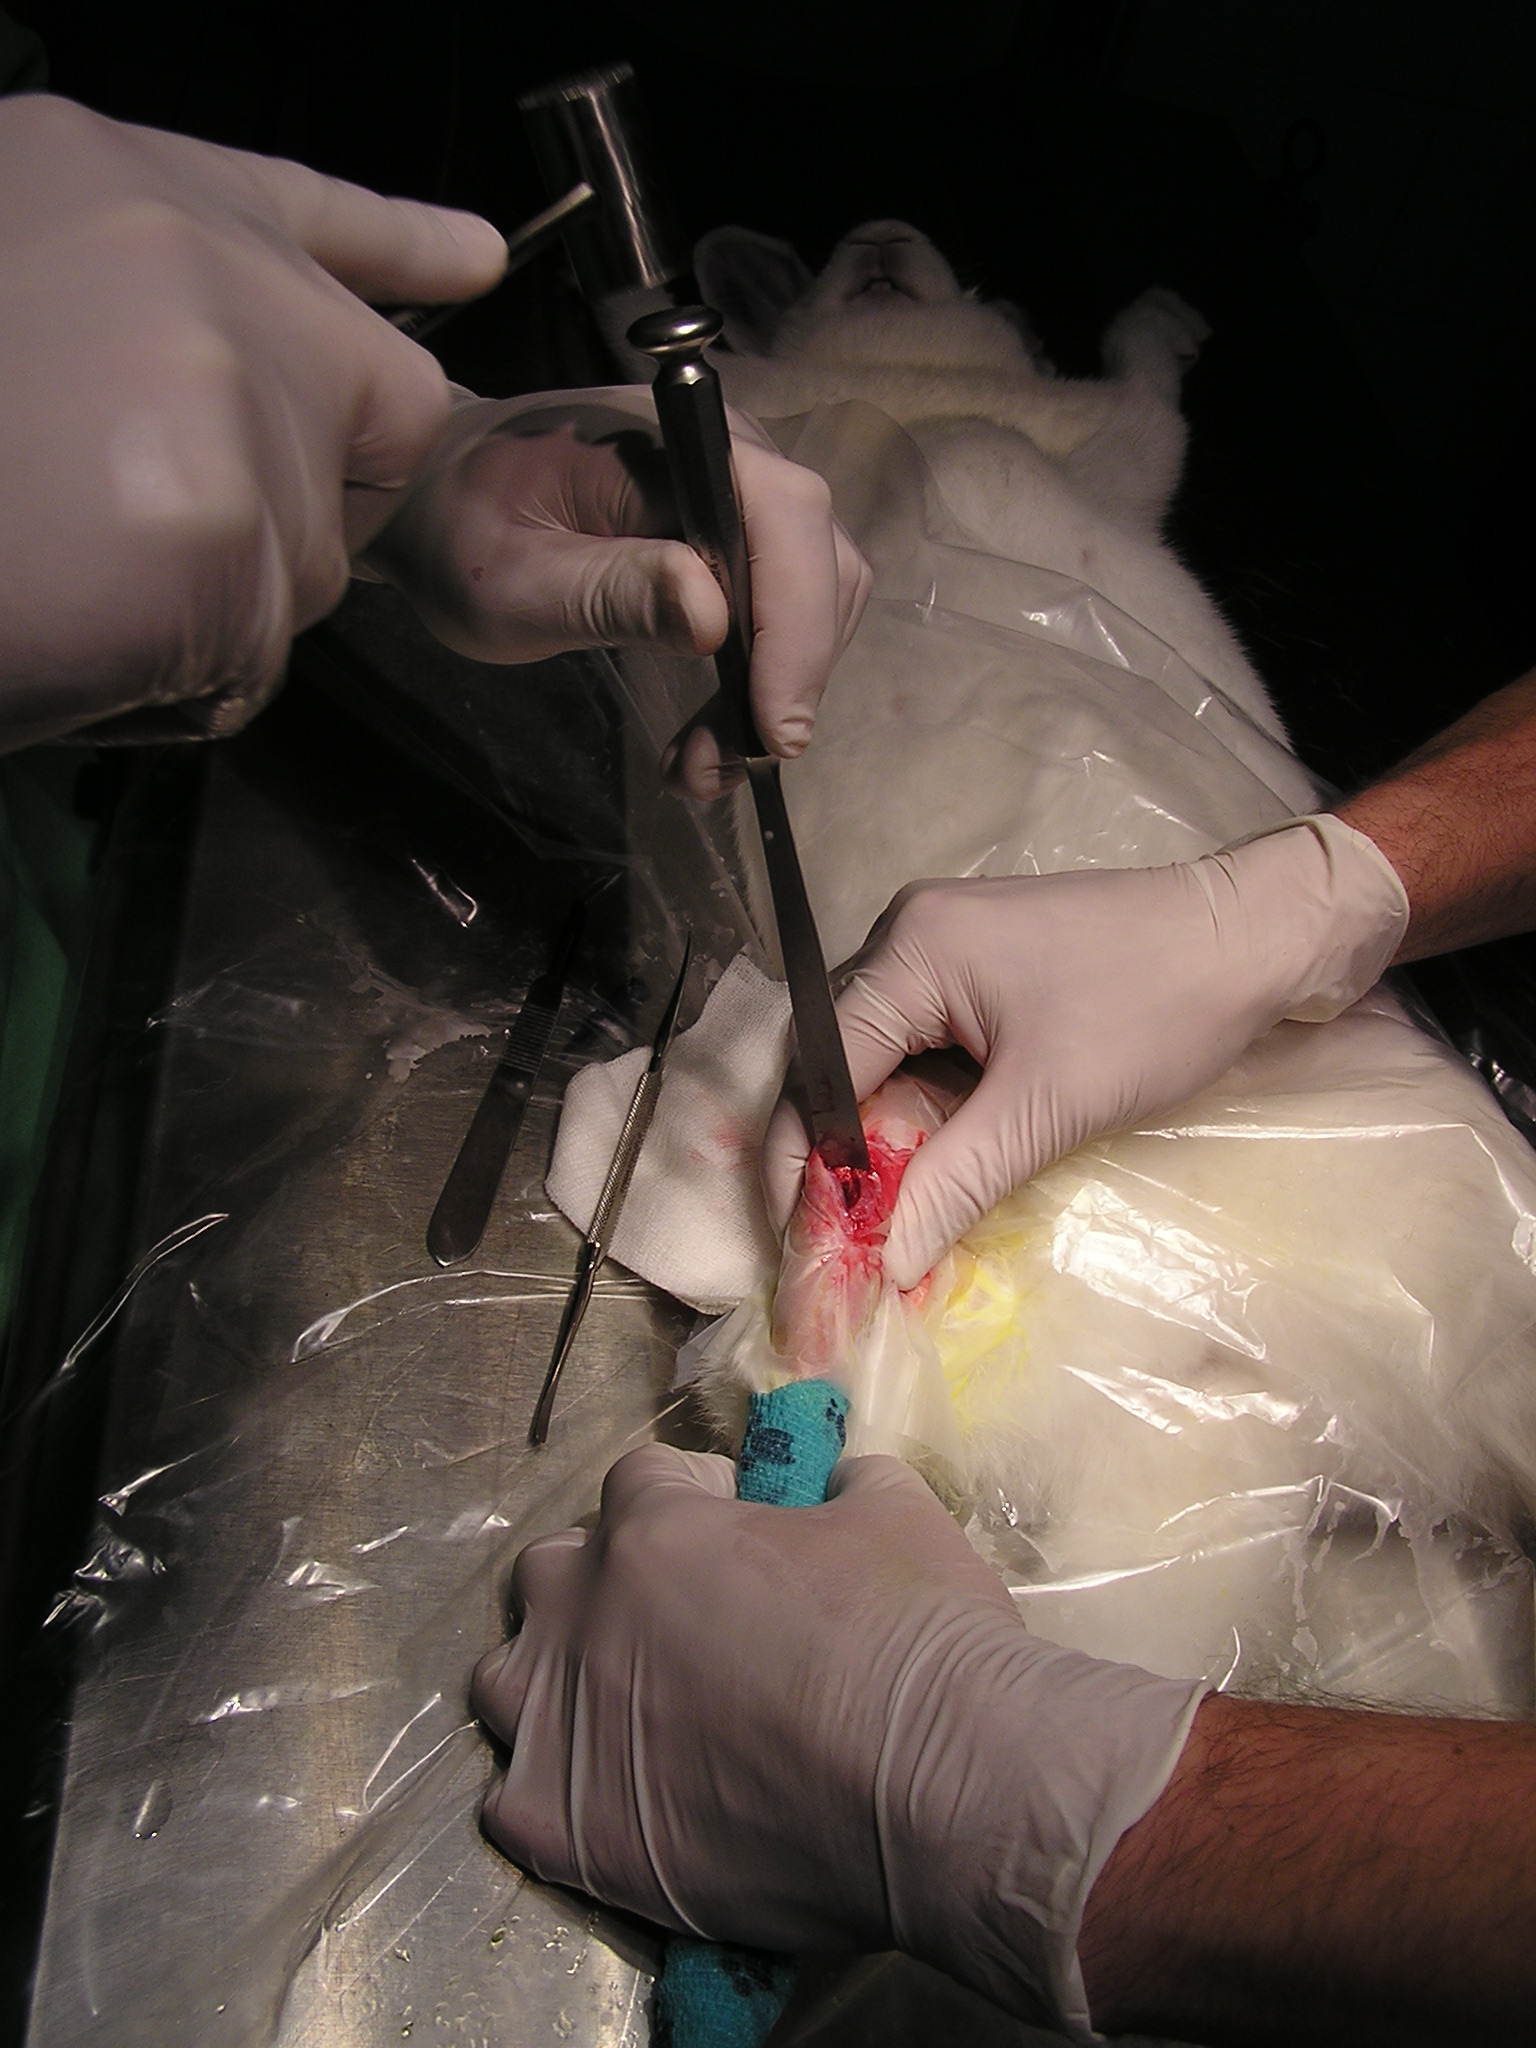 Csontgraft kísérlet nyúlon - a kép a Miskolci Állatkórházban készült